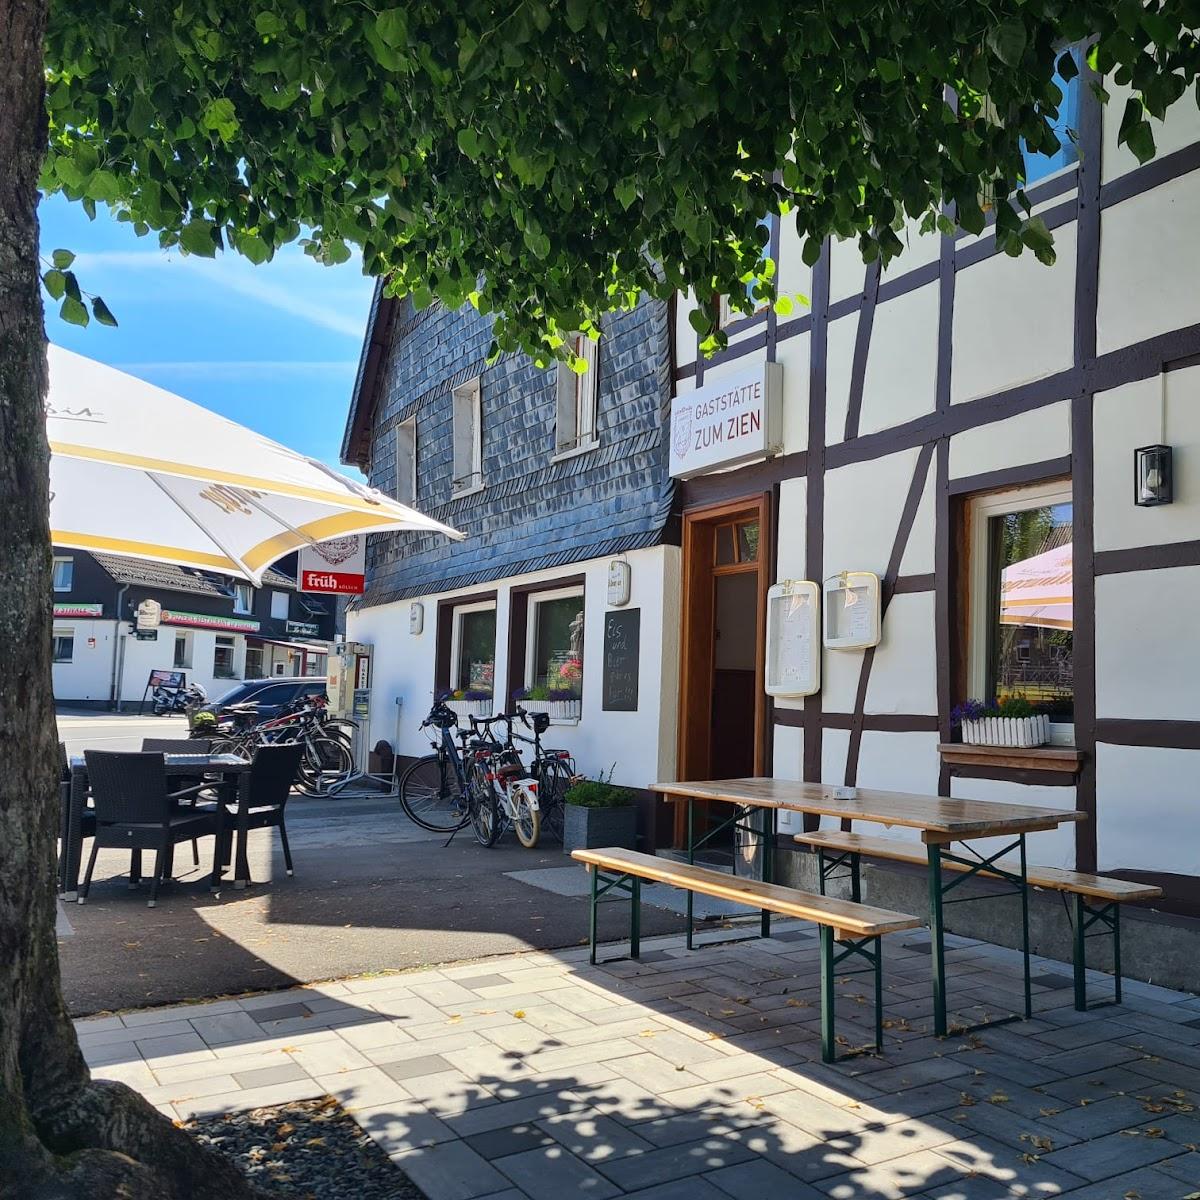 Restaurant "Gaststätte Zum Zien" in Monschau